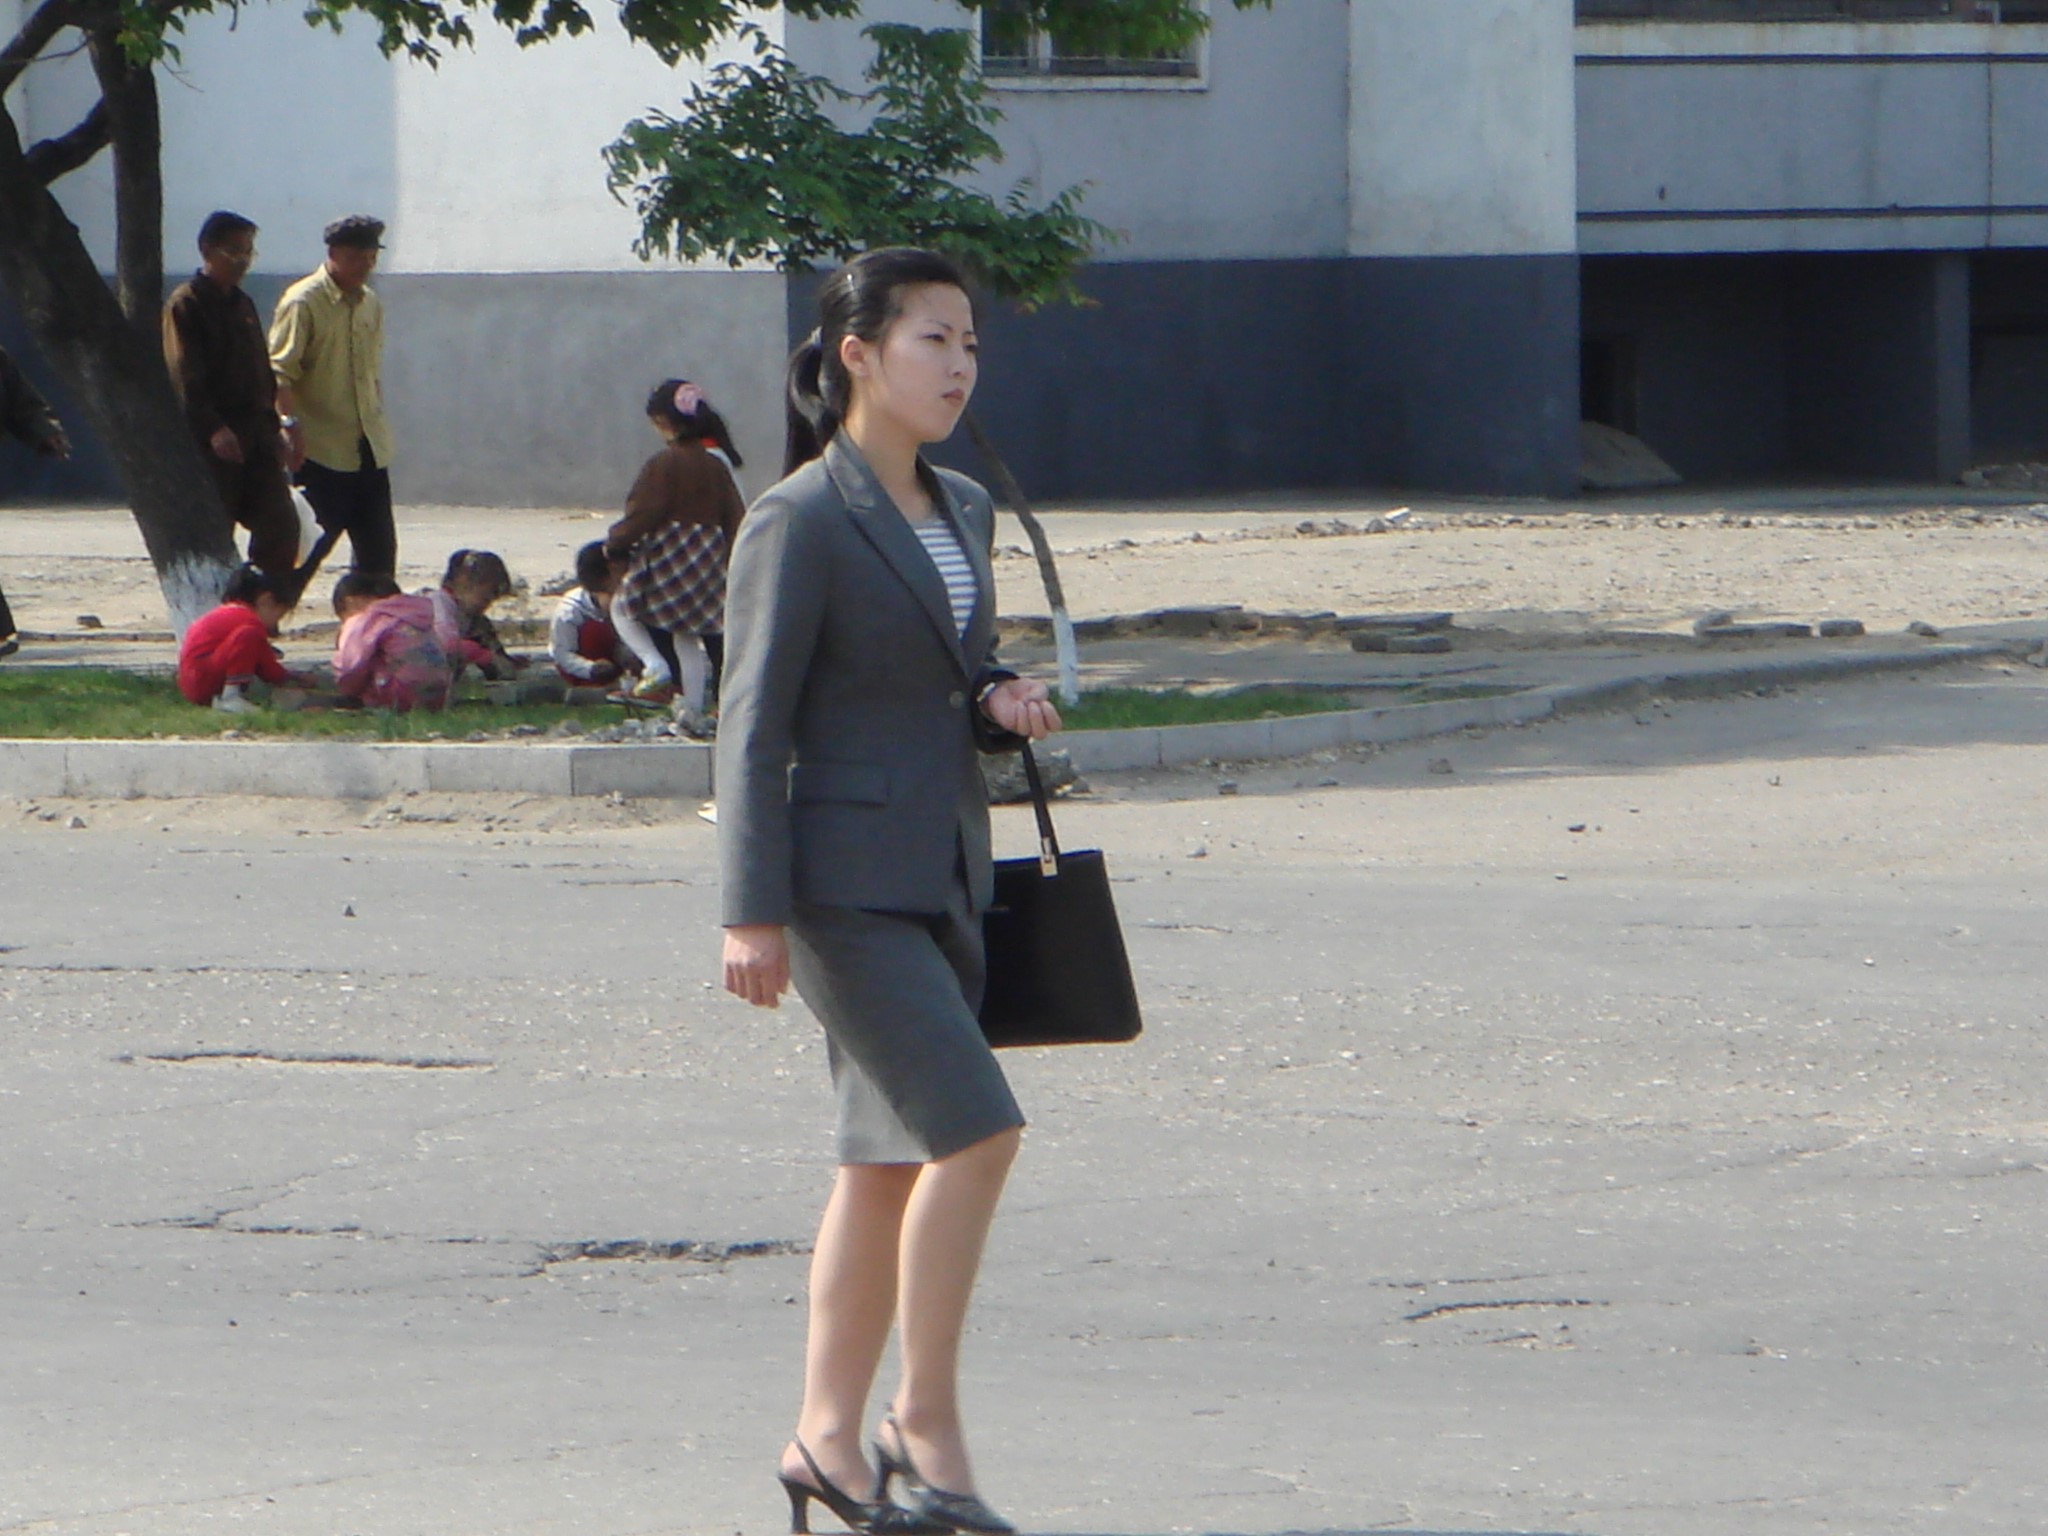 朝鲜街拍图片